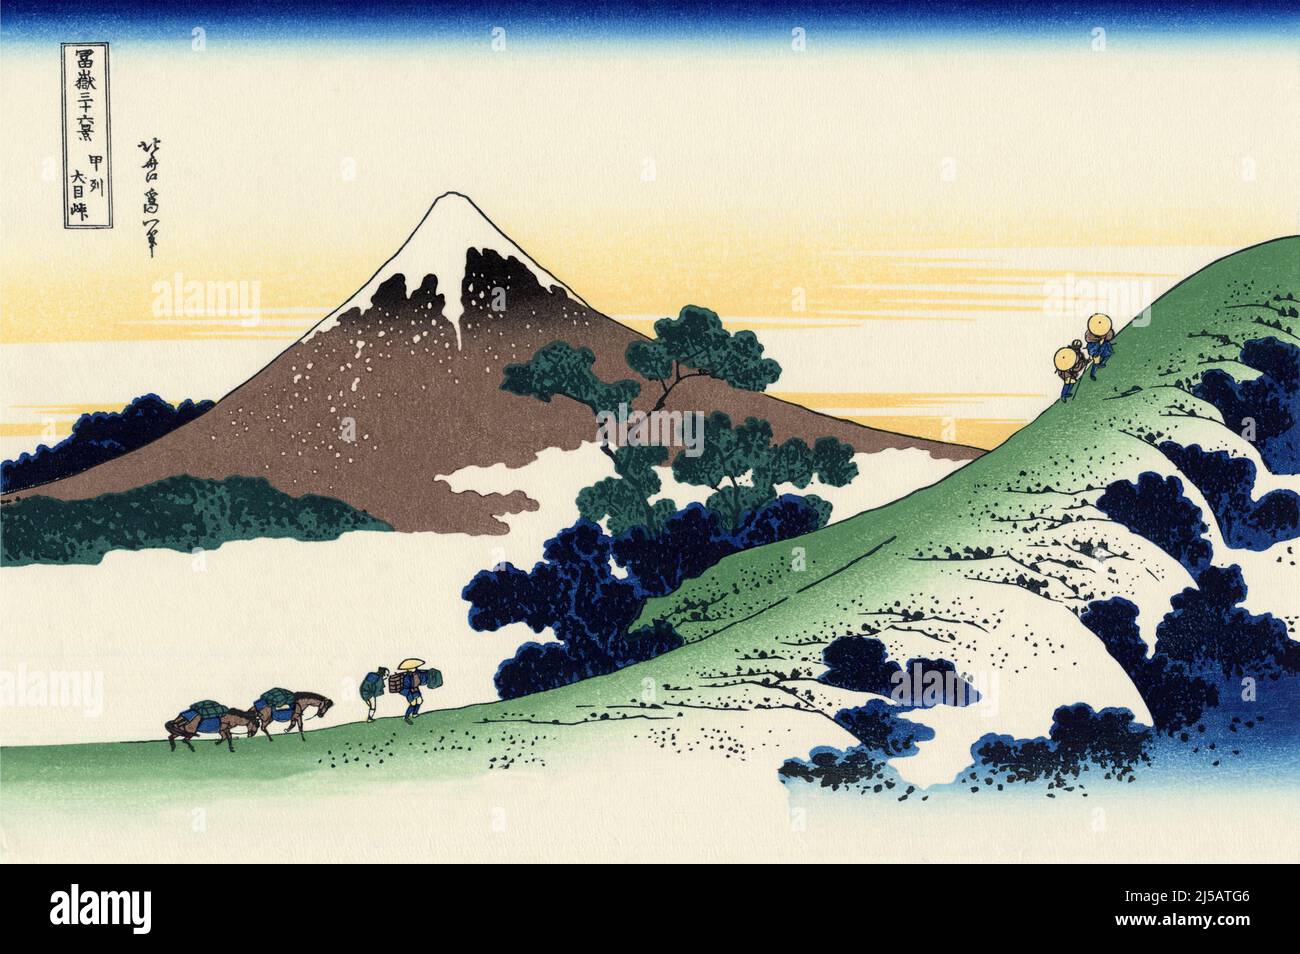 Japón: «Paso del Inume, Koshu». Impresión en bloque de madera ukiyo-e de la serie «Treinta y seis vistas del monte Fuji» de Katsushika Hokusai (31 de octubre de 1760 - 10 de mayo de 1849), 1830. «Treinta y seis vistas del monte Fuji» es una serie «ukiyo-e» de grabados en madera del artista japonés Katsushika Hokusai. La serie muestra el Monte Fuji en diferentes estaciones y condiciones climáticas desde diversos lugares y distancias. En realidad consiste en 46 impresiones creadas entre 1826 y 1833. Los primeros 36 fueron incluidos en la publicación original y, debido a su popularidad, 10 más fueron añadidos después de la publicación original. Foto de stock